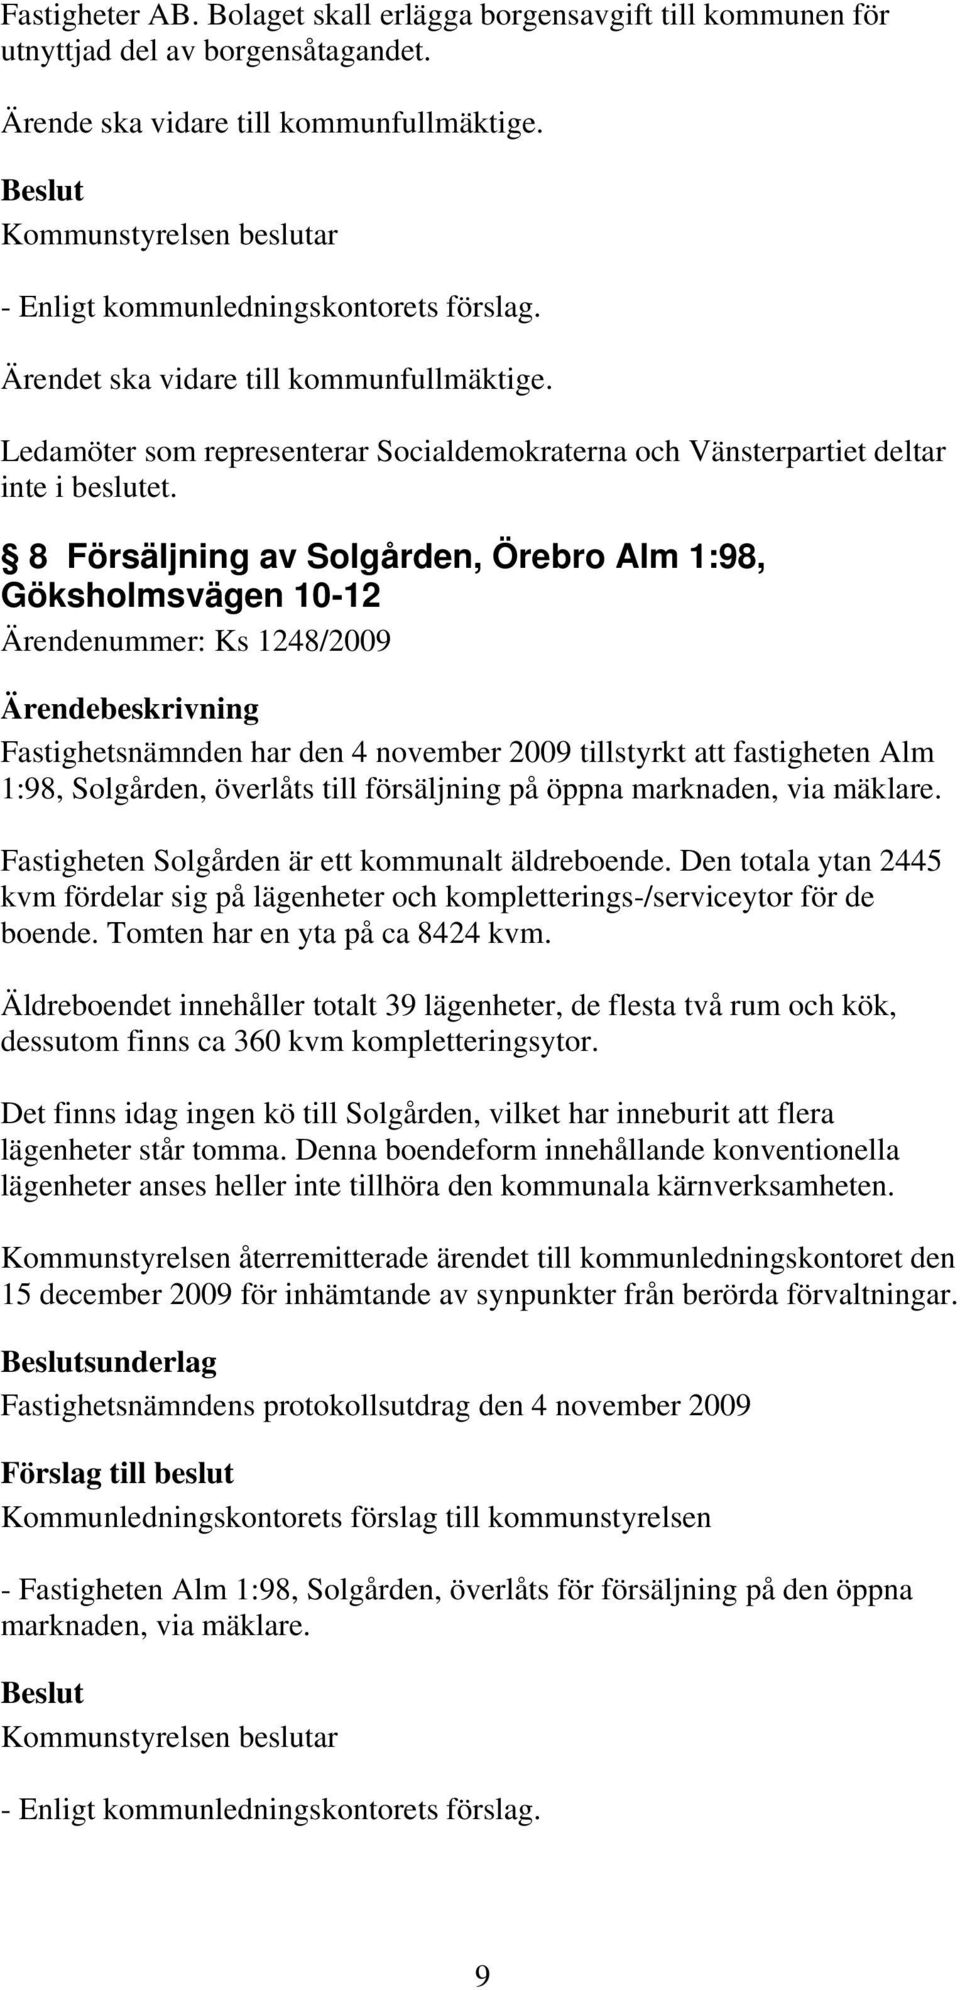 8 Försäljning av Solgården, Örebro Alm 1:98, Göksholmsvägen 10-12 Ärendenummer: Ks 1248/2009 Fastighetsnämnden har den 4 november 2009 tillstyrkt att fastigheten Alm 1:98, Solgården, överlåts till